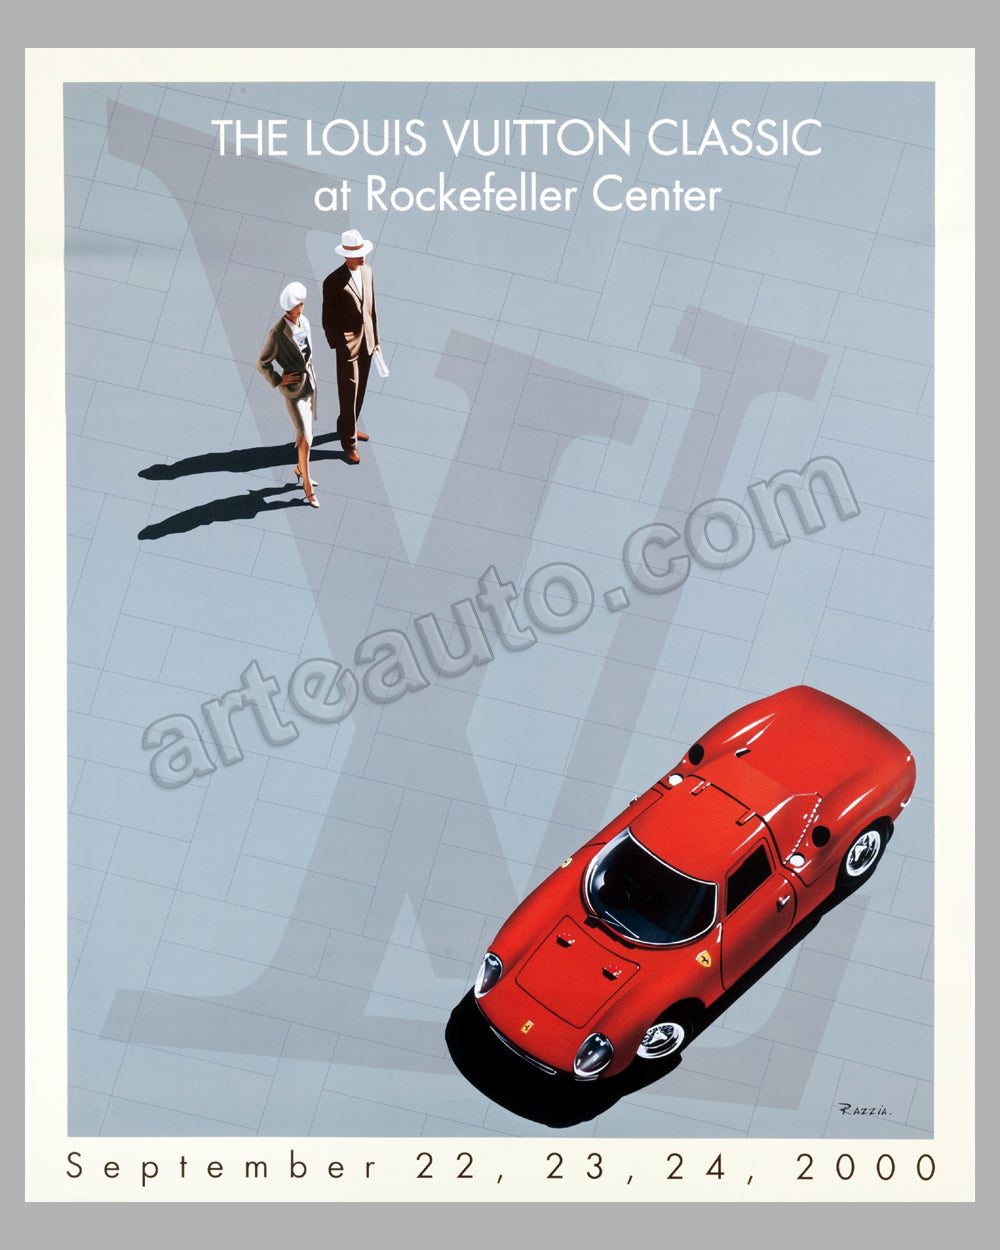 Louis Vuitton Cup 2002/03 large original poster by Razzia - l&#39;art et l&#39;automobile